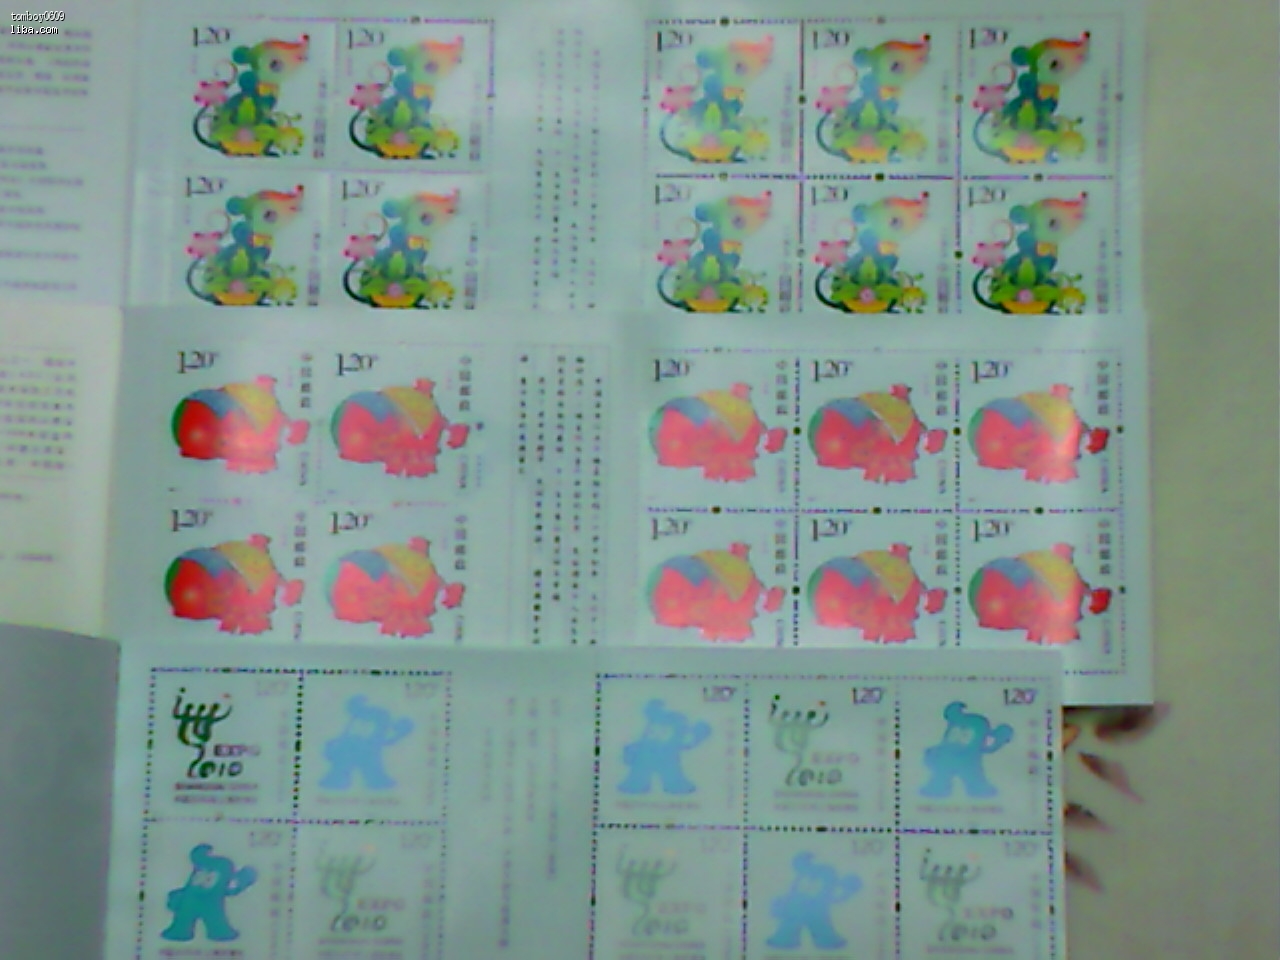 08年鼠年邮票,07年猪年邮票,世博吉祥物, 08年